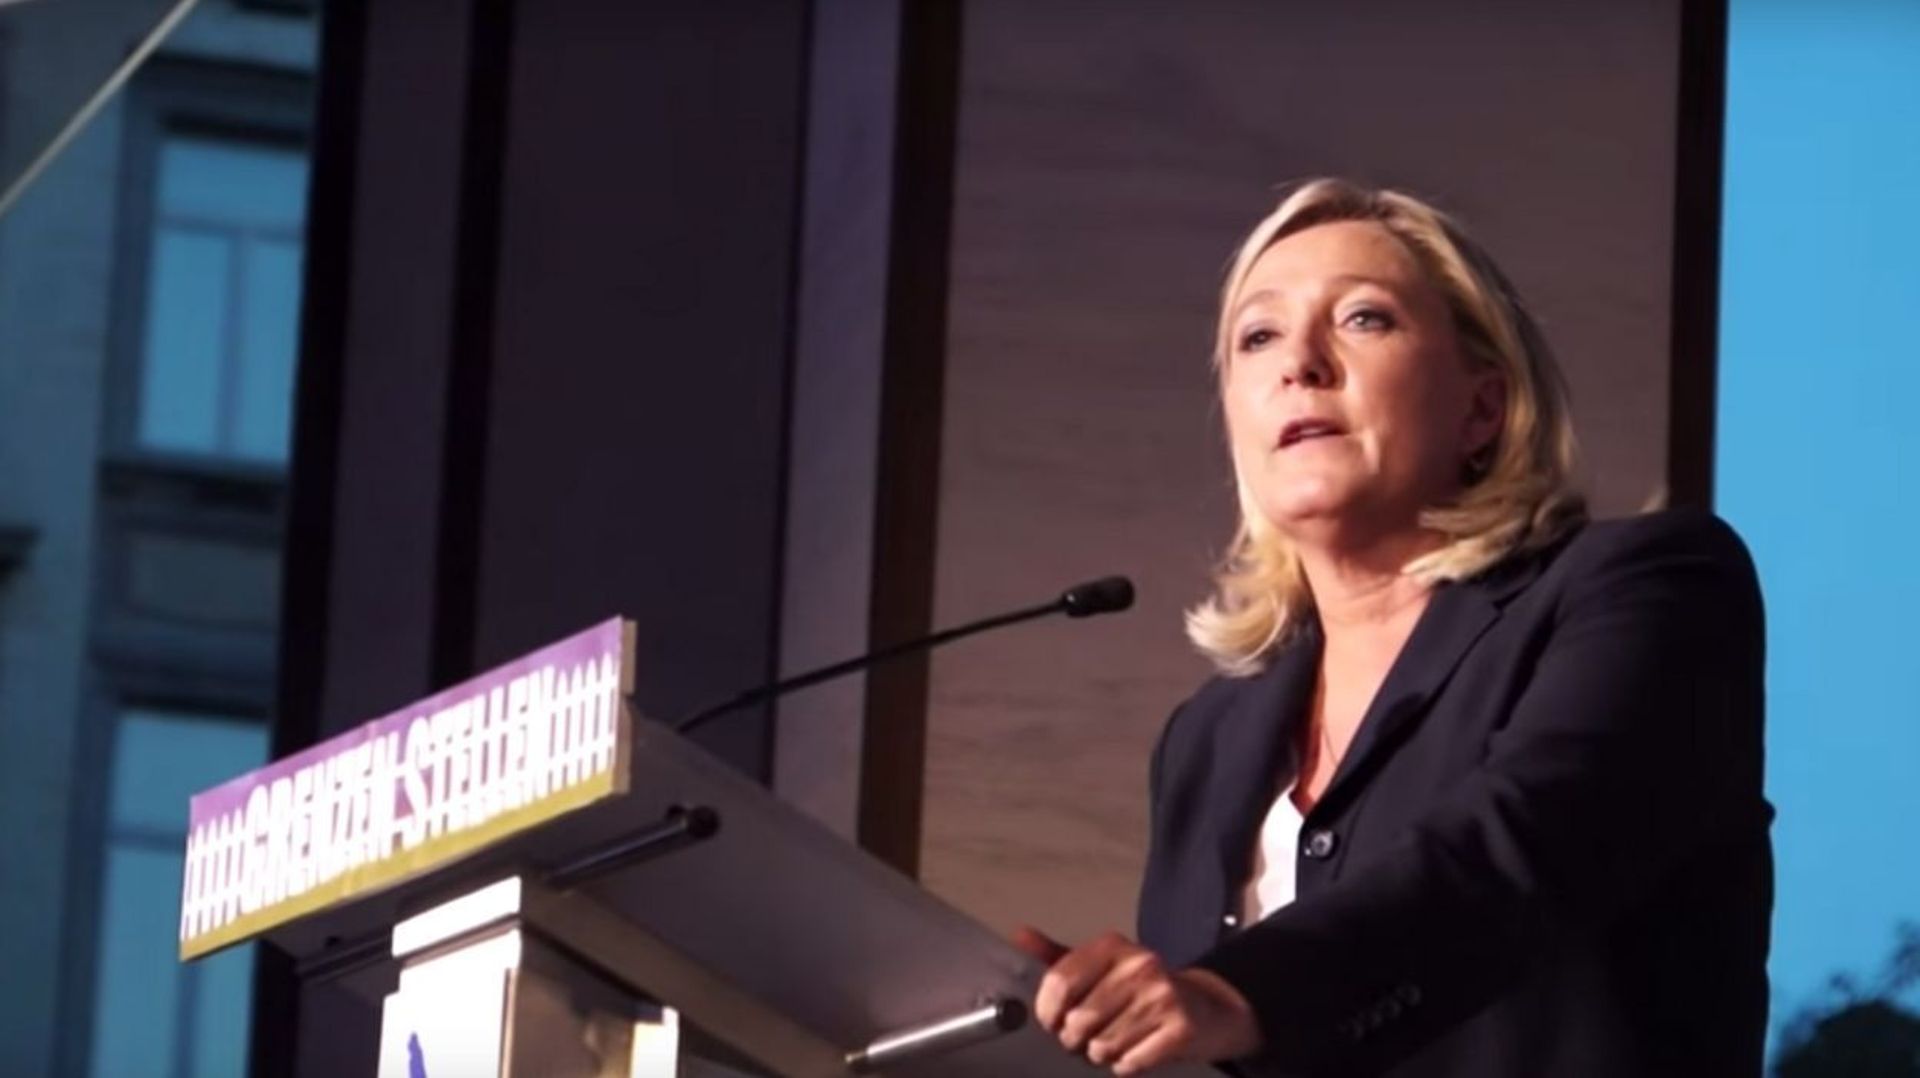 Dans un sondage, 20% des Wallons se disaient prêts à voter pour Marine Le Pen.